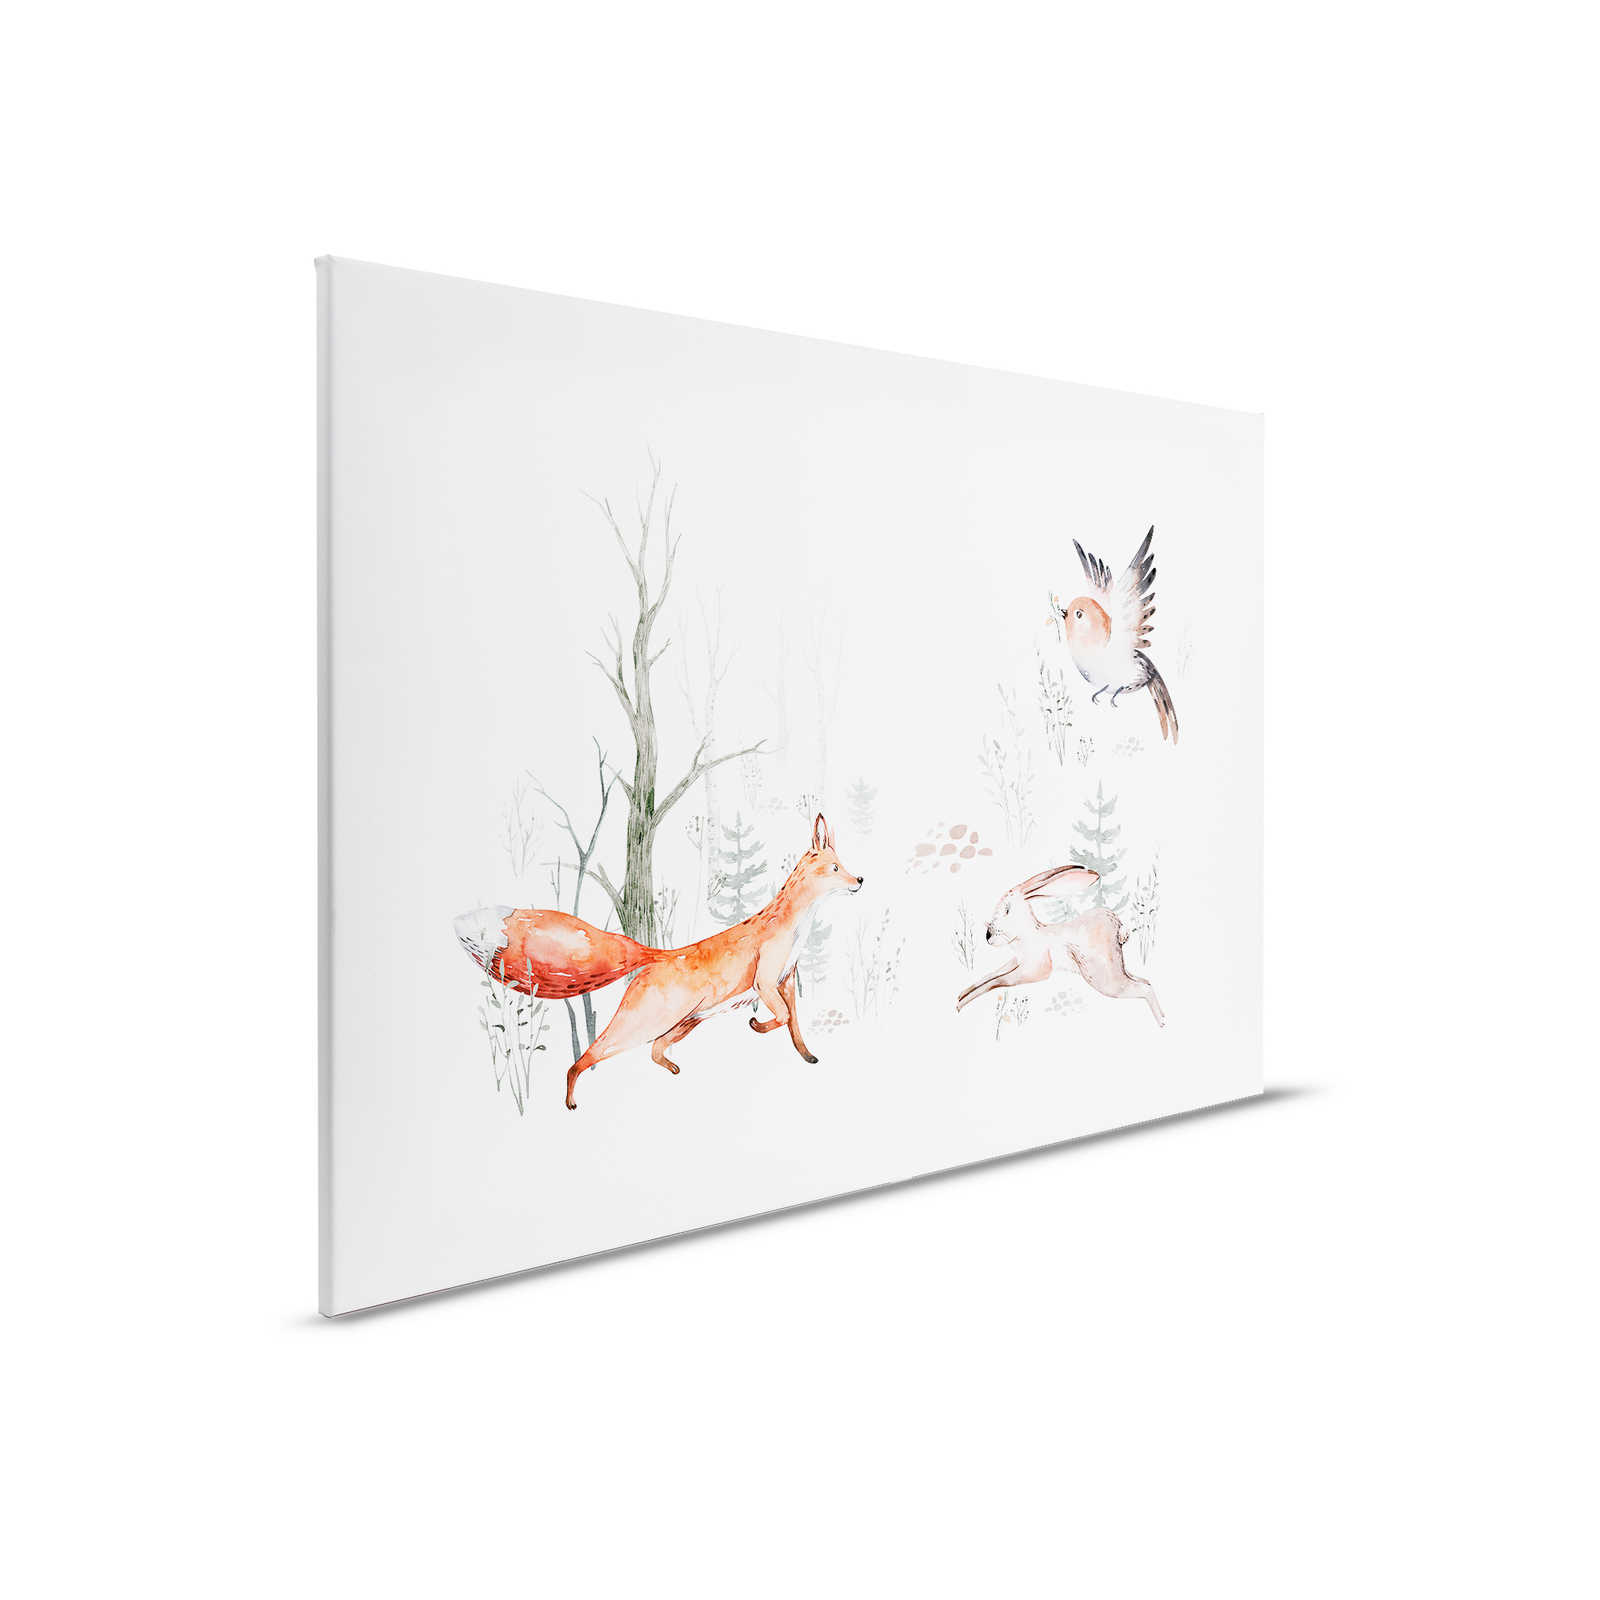 Canvas schilderij met dieren in het bos voor de kinderkamer - 0.90 m x 0.60 m
